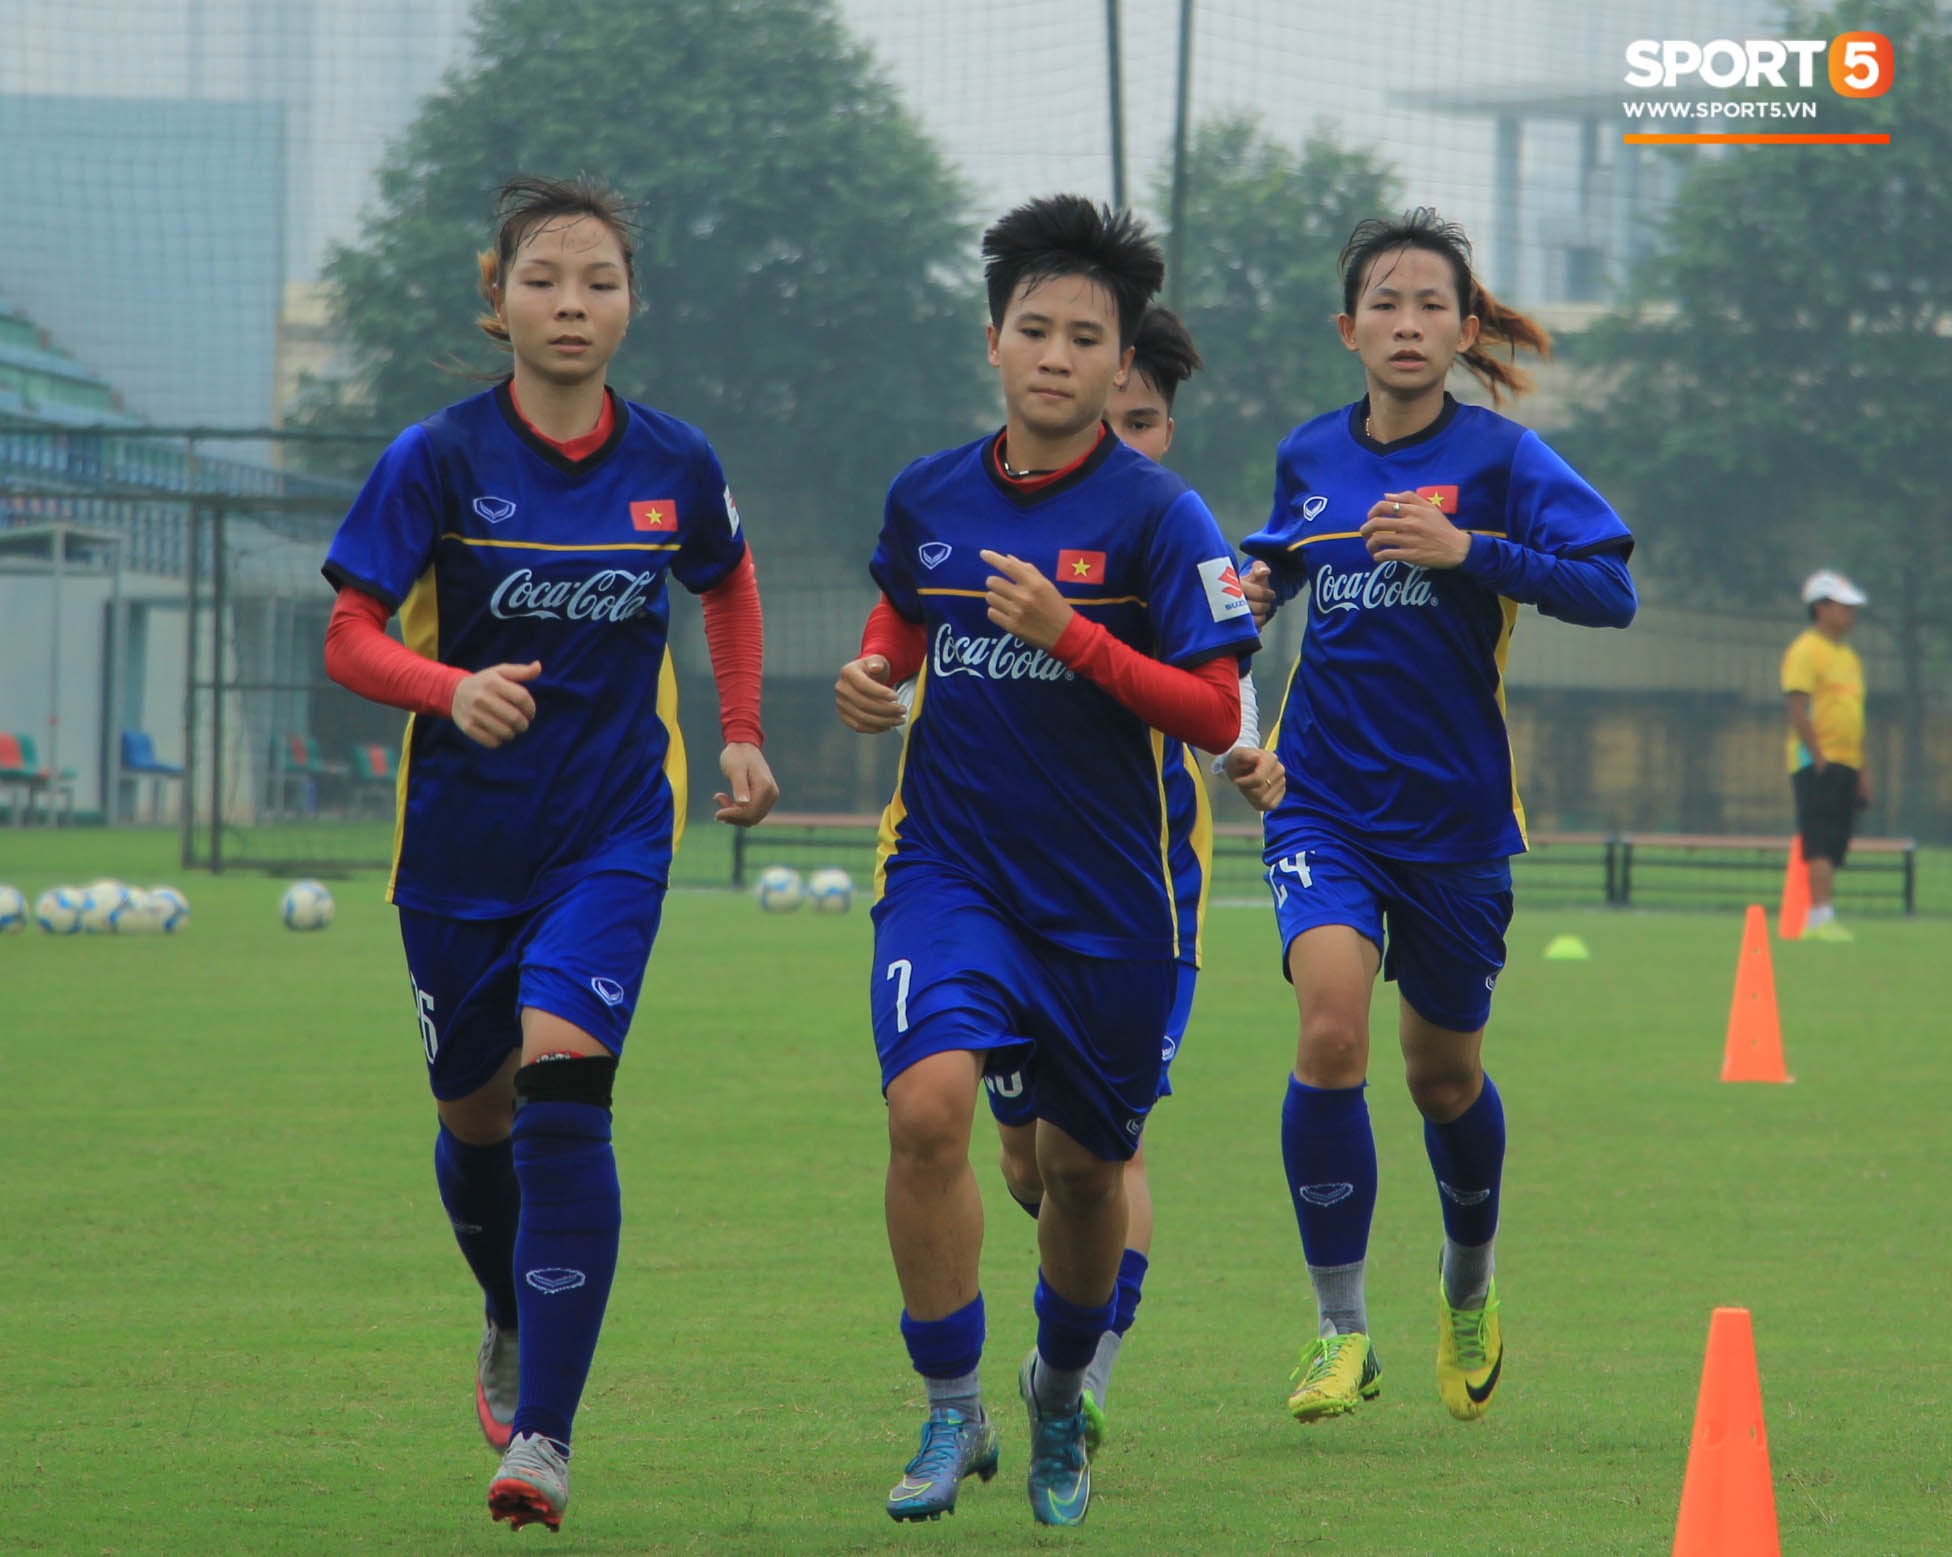 Đội tuyển nữ Việt Nam chốt danh sách lên đường tập huấn tại Nhật Bản - Ảnh 1.